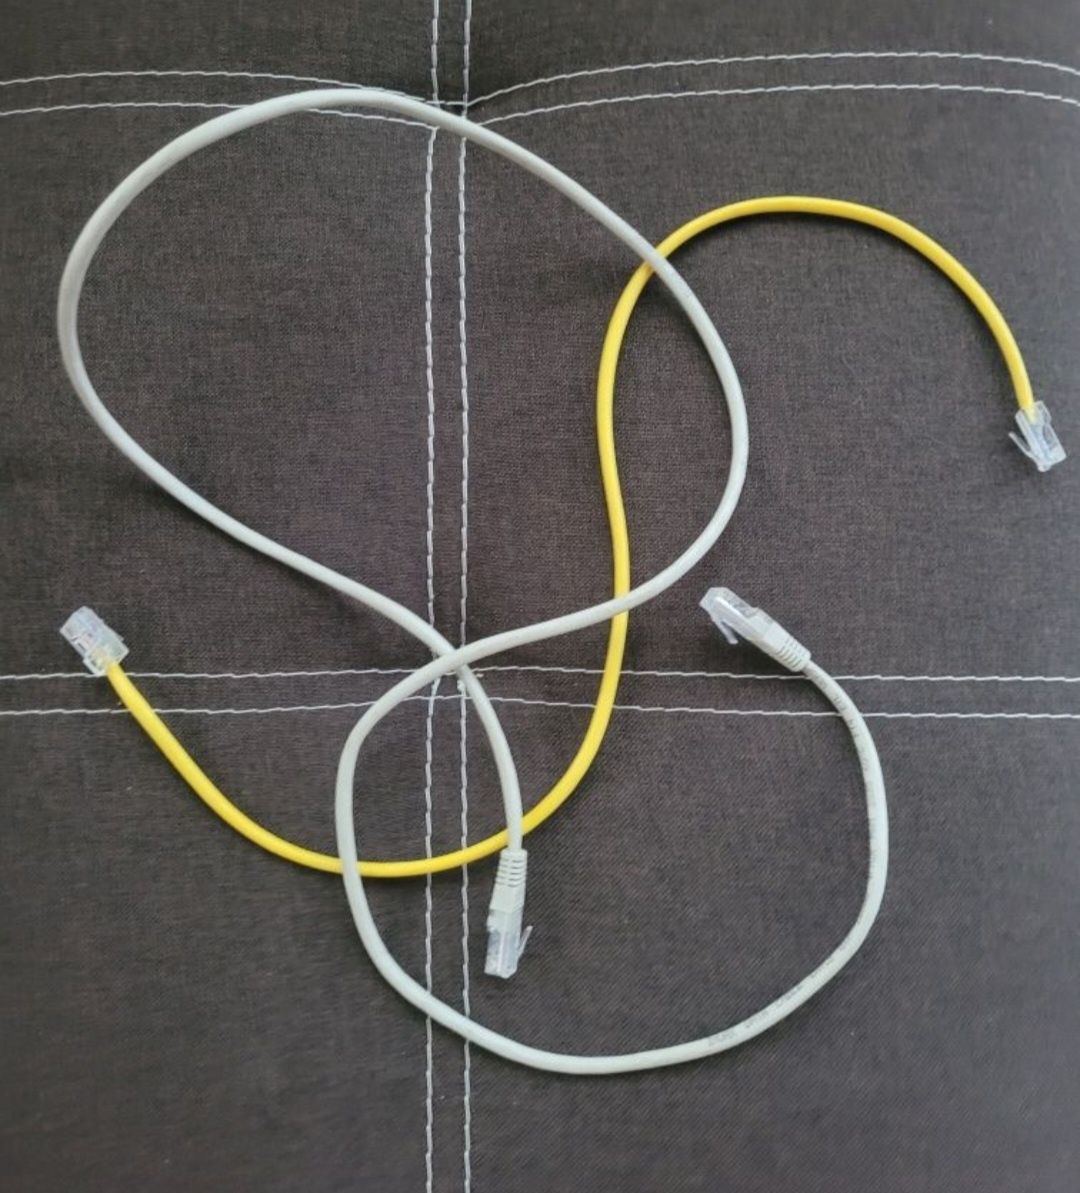 Патч корд, кабель для интернета 120см- 100грн и 60см  желтый - 70грн,